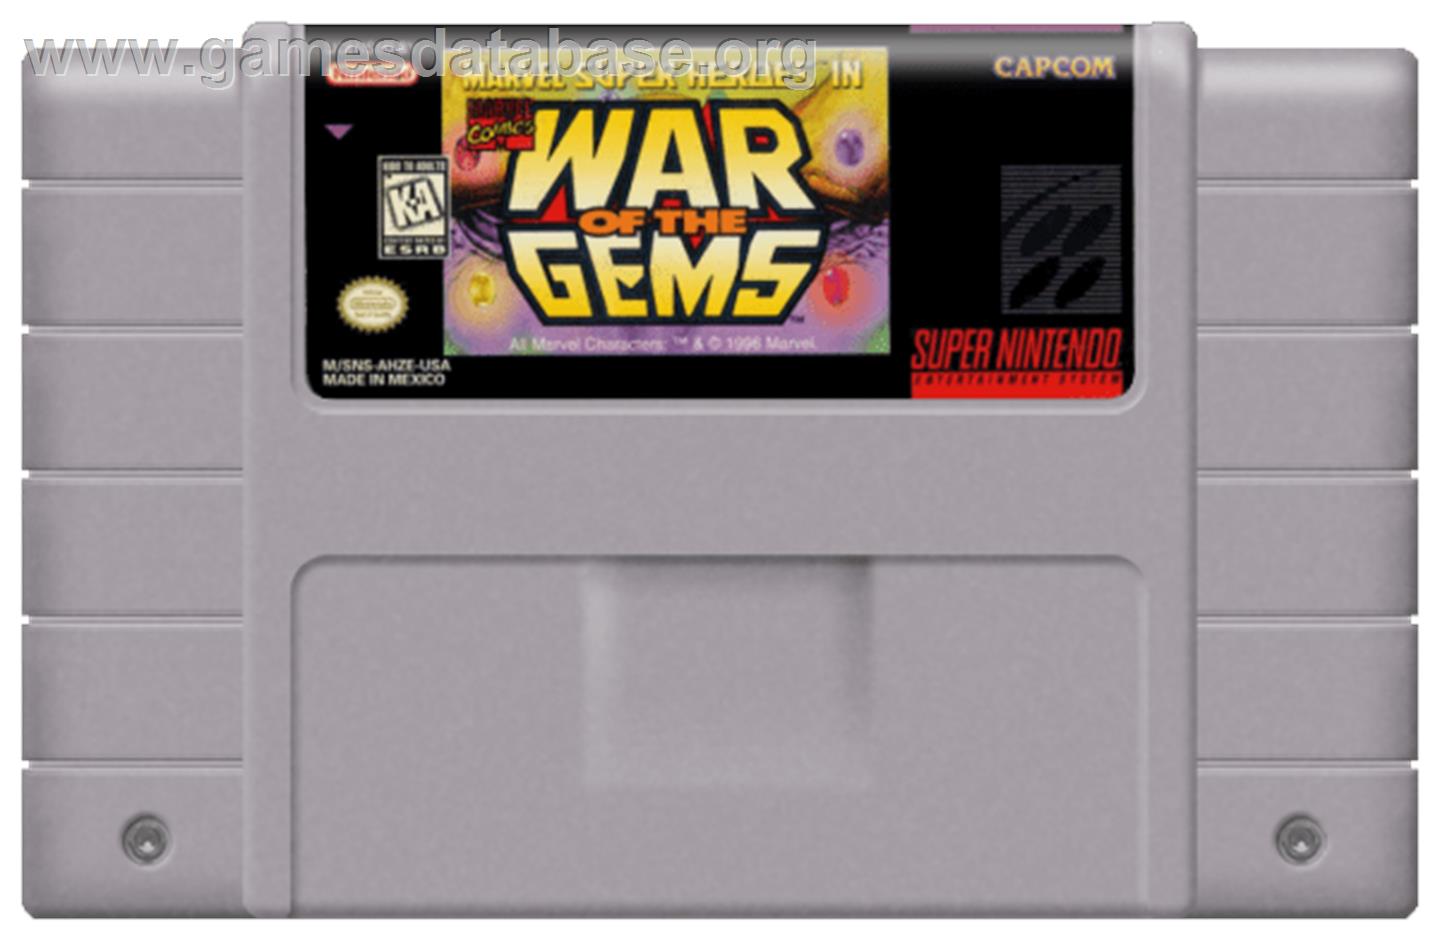 Marvel Super Heroes in War of the Gems - Nintendo SNES - Artwork - Cartridge